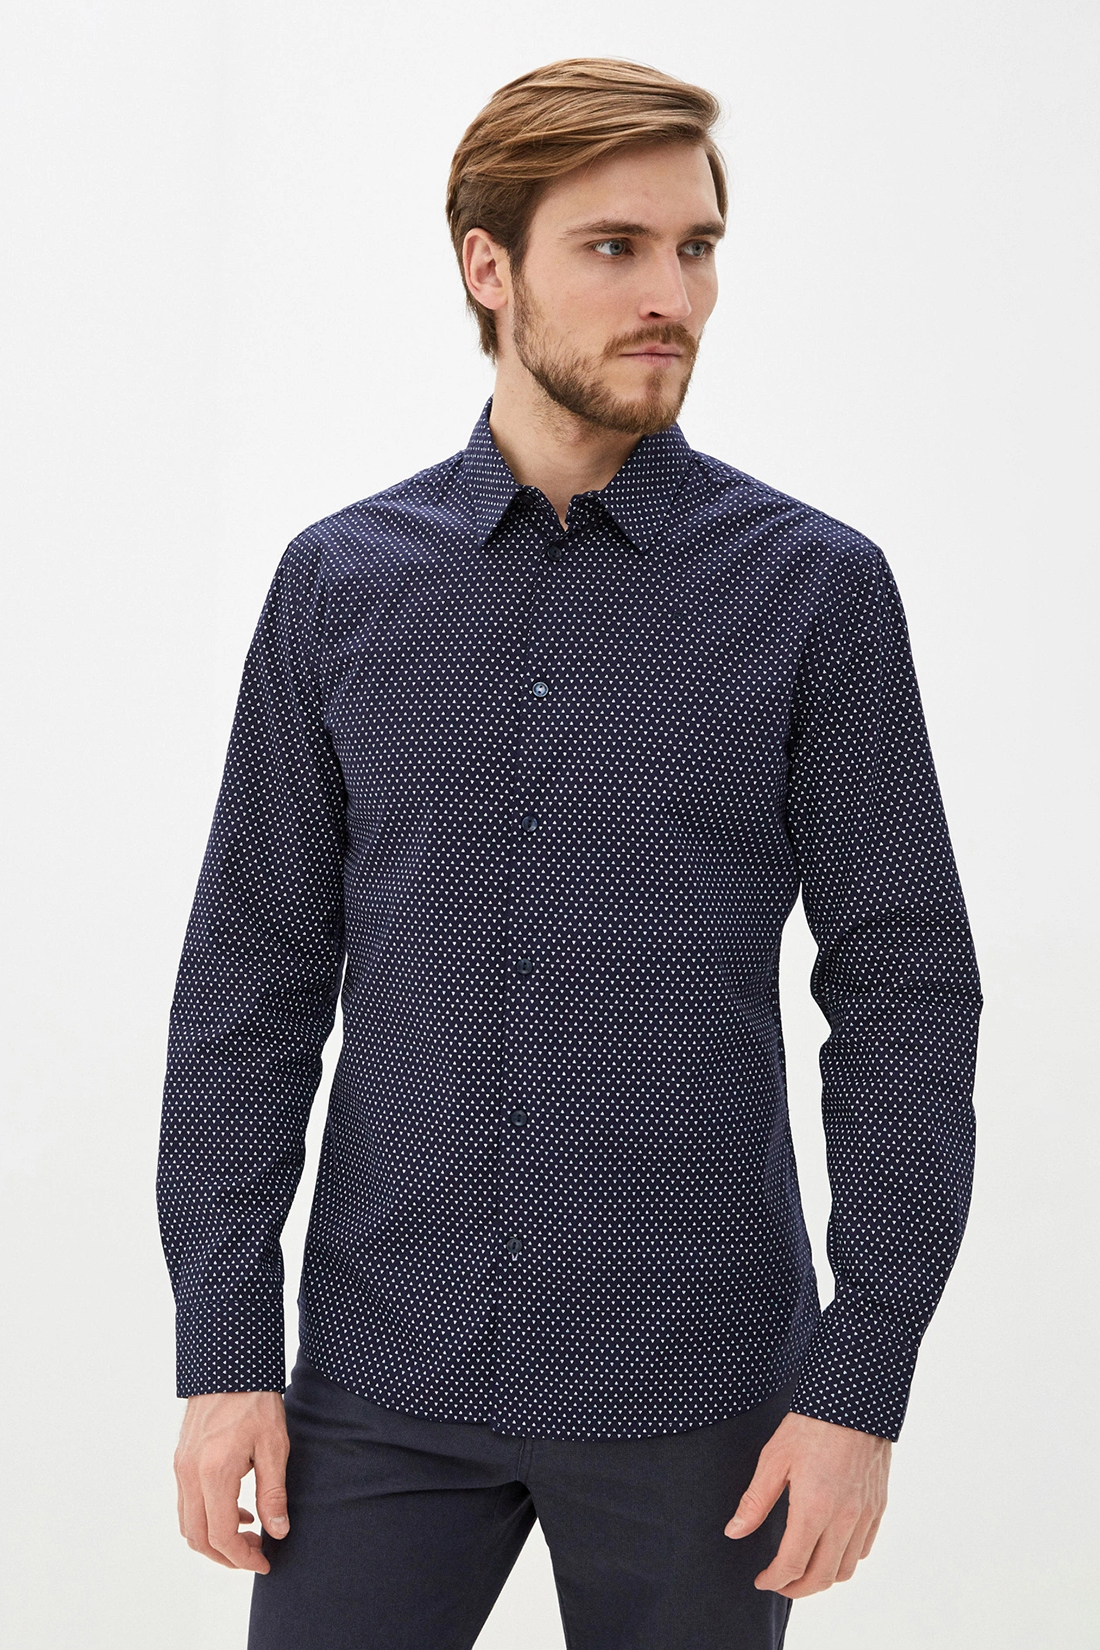 Классическая рубашка с принтом (арт. baon B660012), размер L, цвет синий Классическая рубашка с принтом (арт. baon B660012) - фото 4